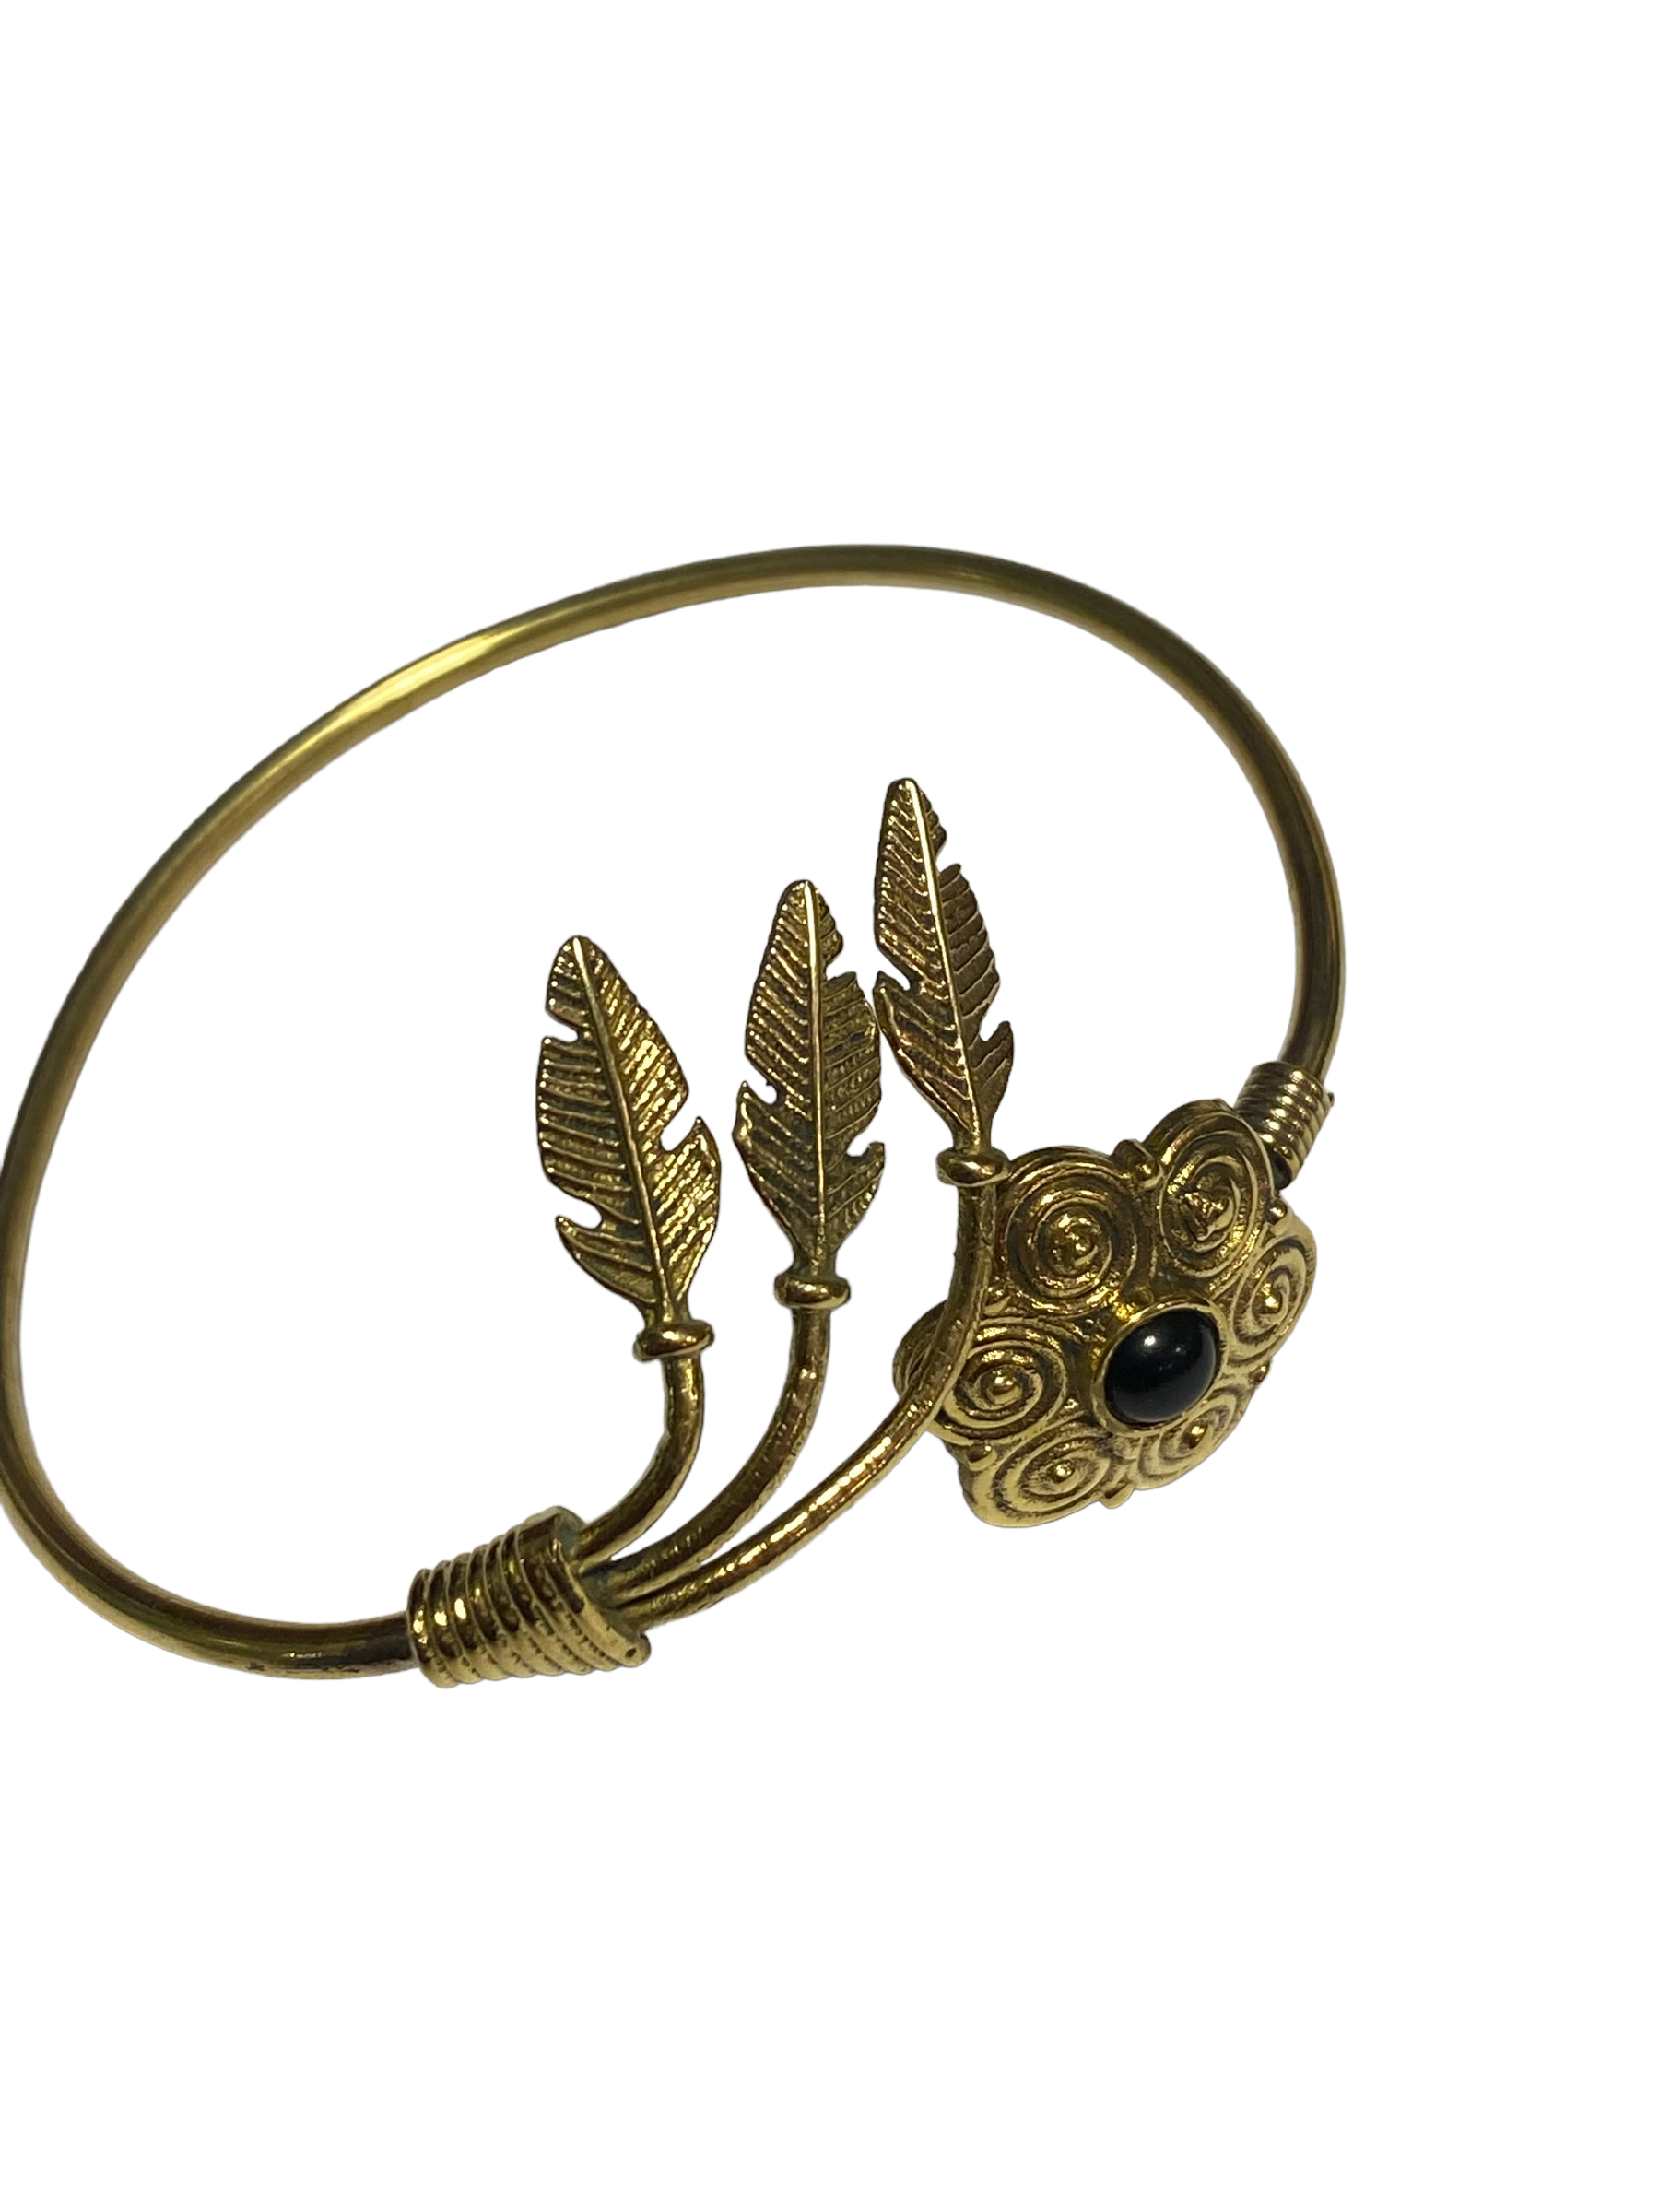 9. Brons Armband, blomma och fjädrar